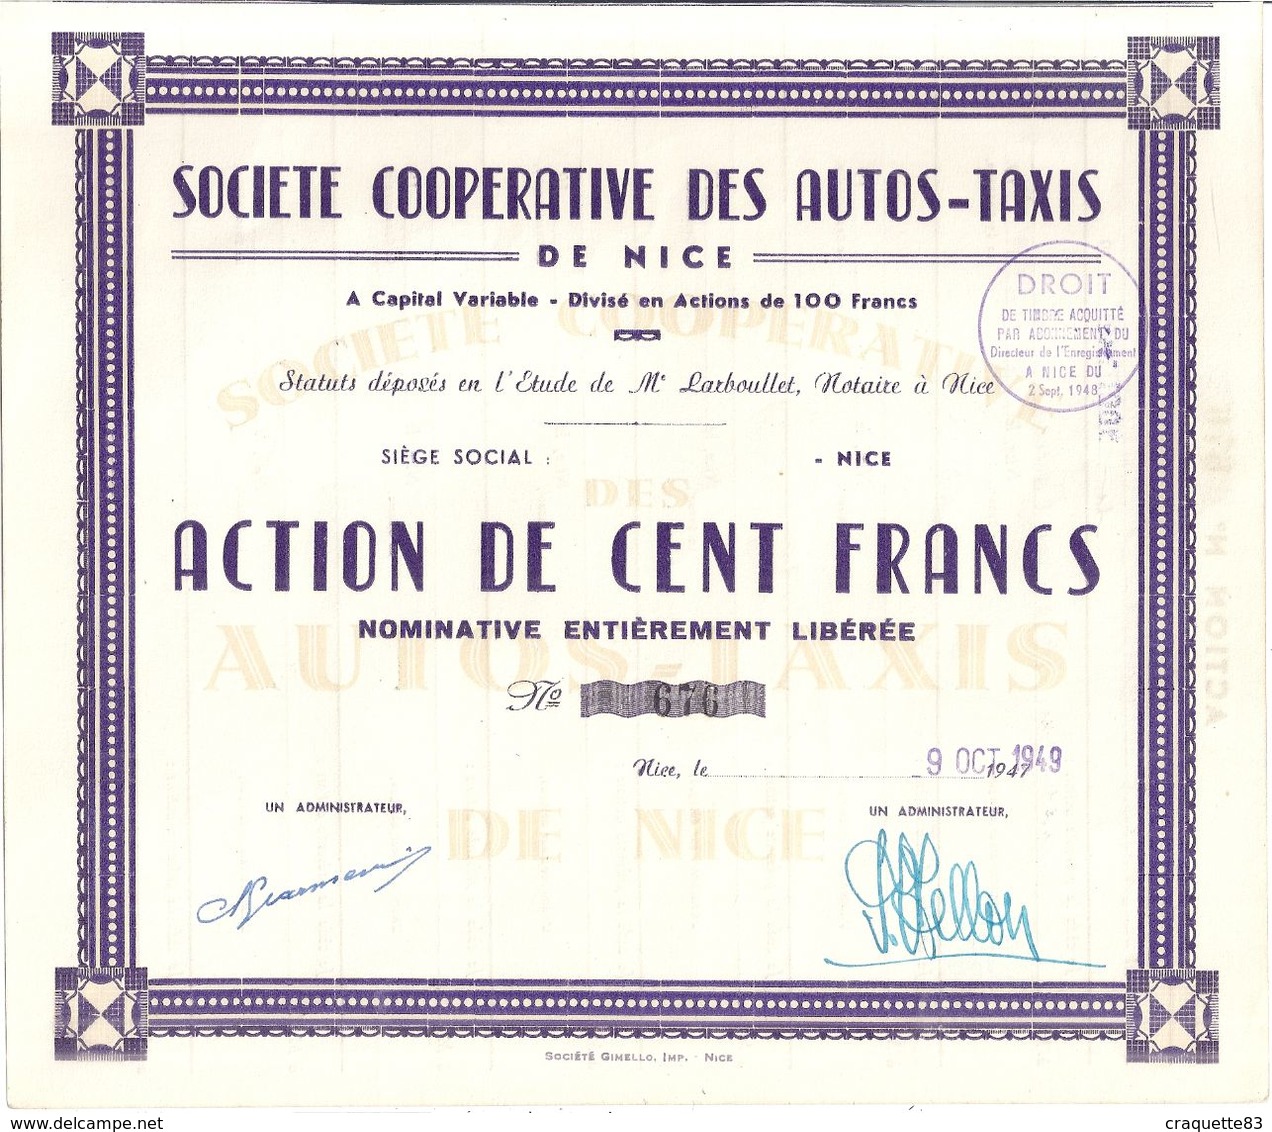 SOCIETE COOPERATIVE DES AUTOS-TAXIS DE NICE -ACTION DE CENT FRANCS -1949 N°676 - Automobile